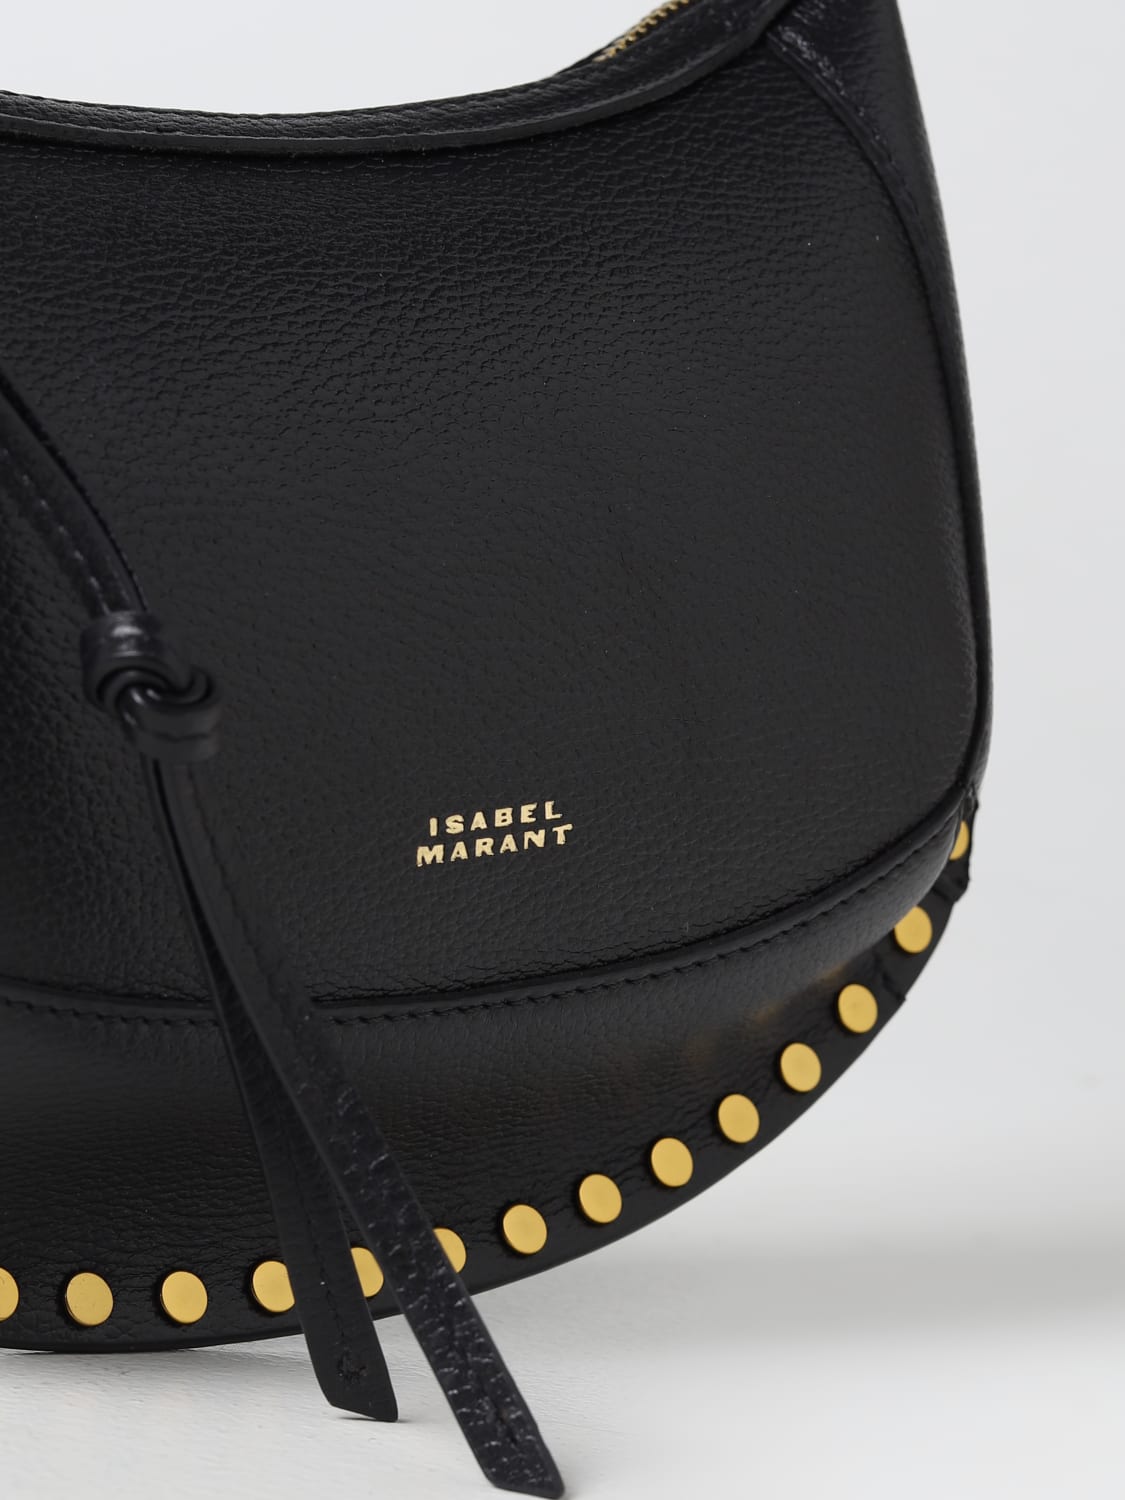 ISABEL MARANT: Oskan bag in leather - Black | Isabel Marant shoulder ...